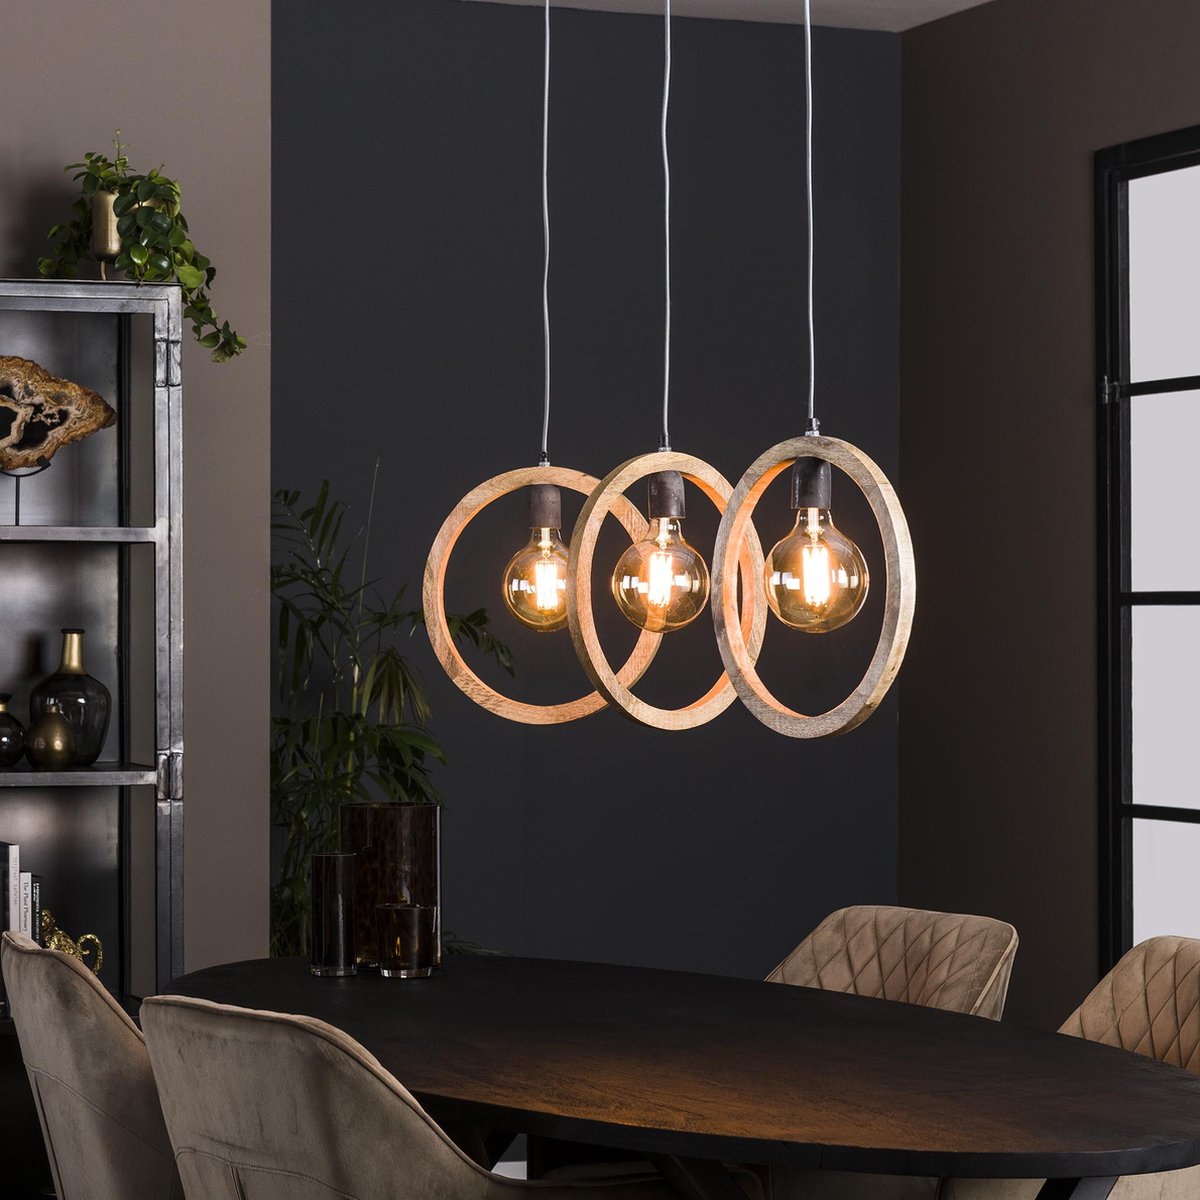 Eettafel hanglamp | 3 lichts | 150 cm | ⌀ 35 cm | bruin | massief mangohout / metaal | modern / landelijk design